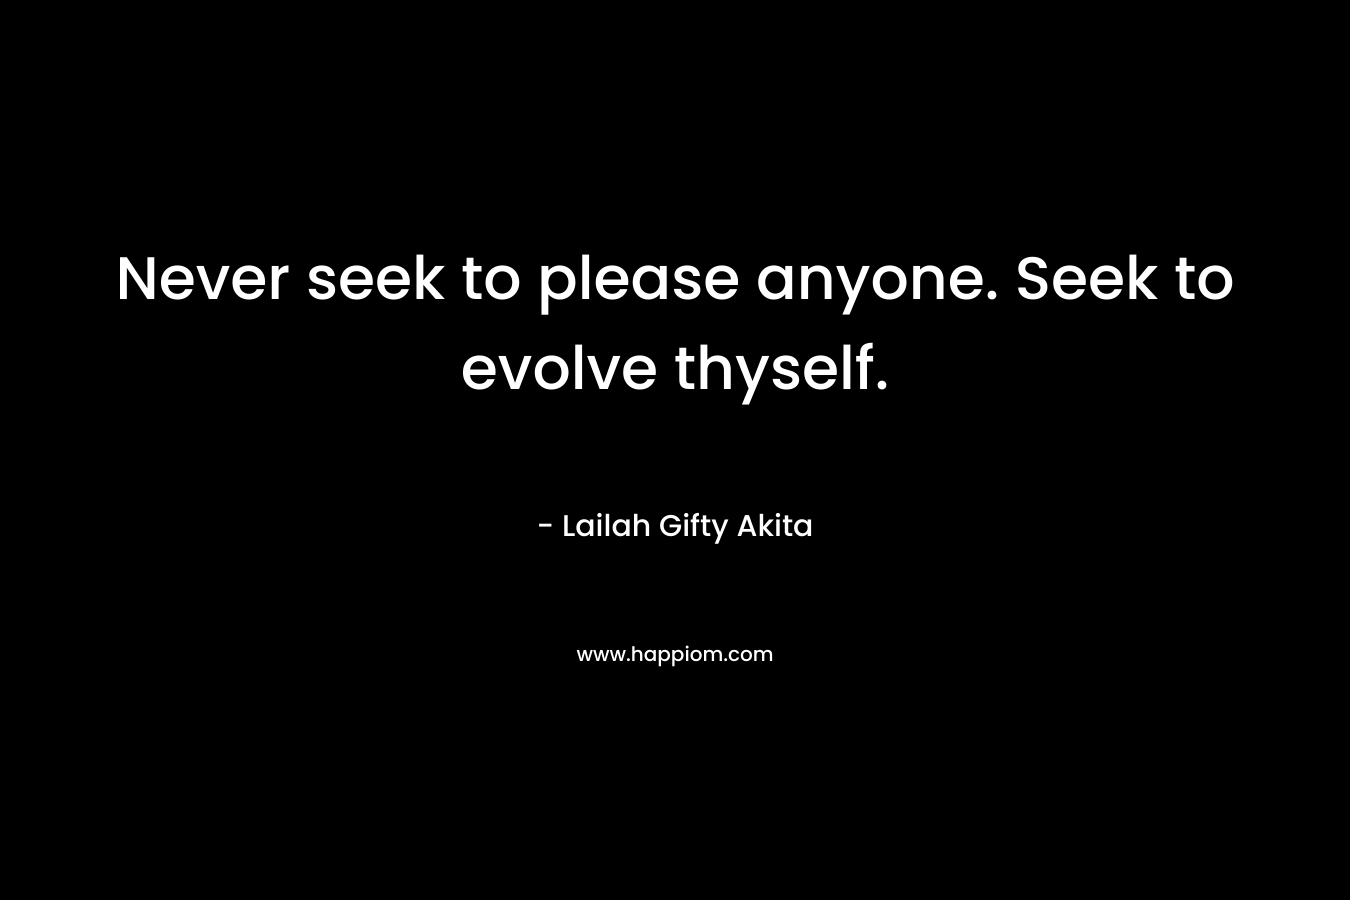 Never seek to please anyone. Seek to evolve thyself.